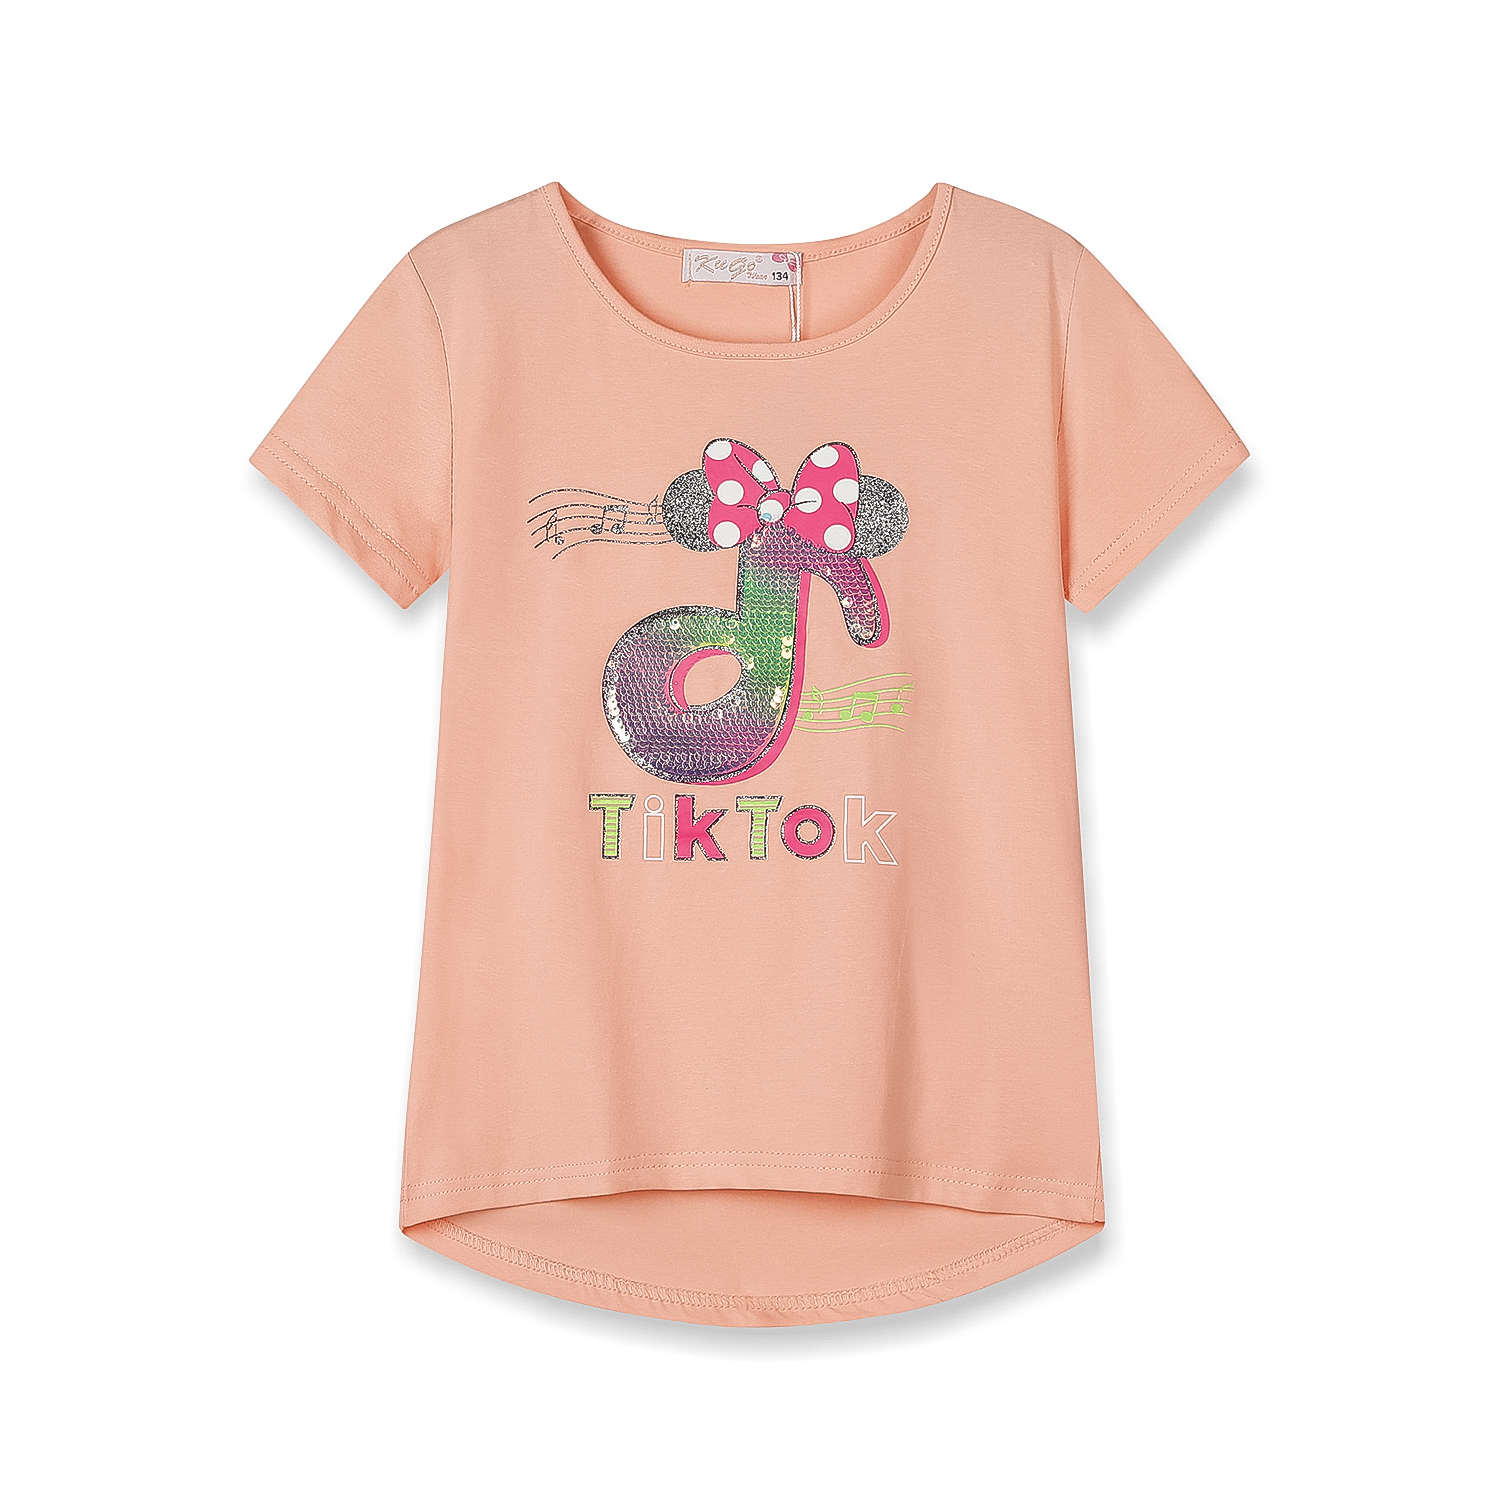 Dívčí triko s flitry - KUGO WK0803, lososová Barva: Lososová, Velikost: 134